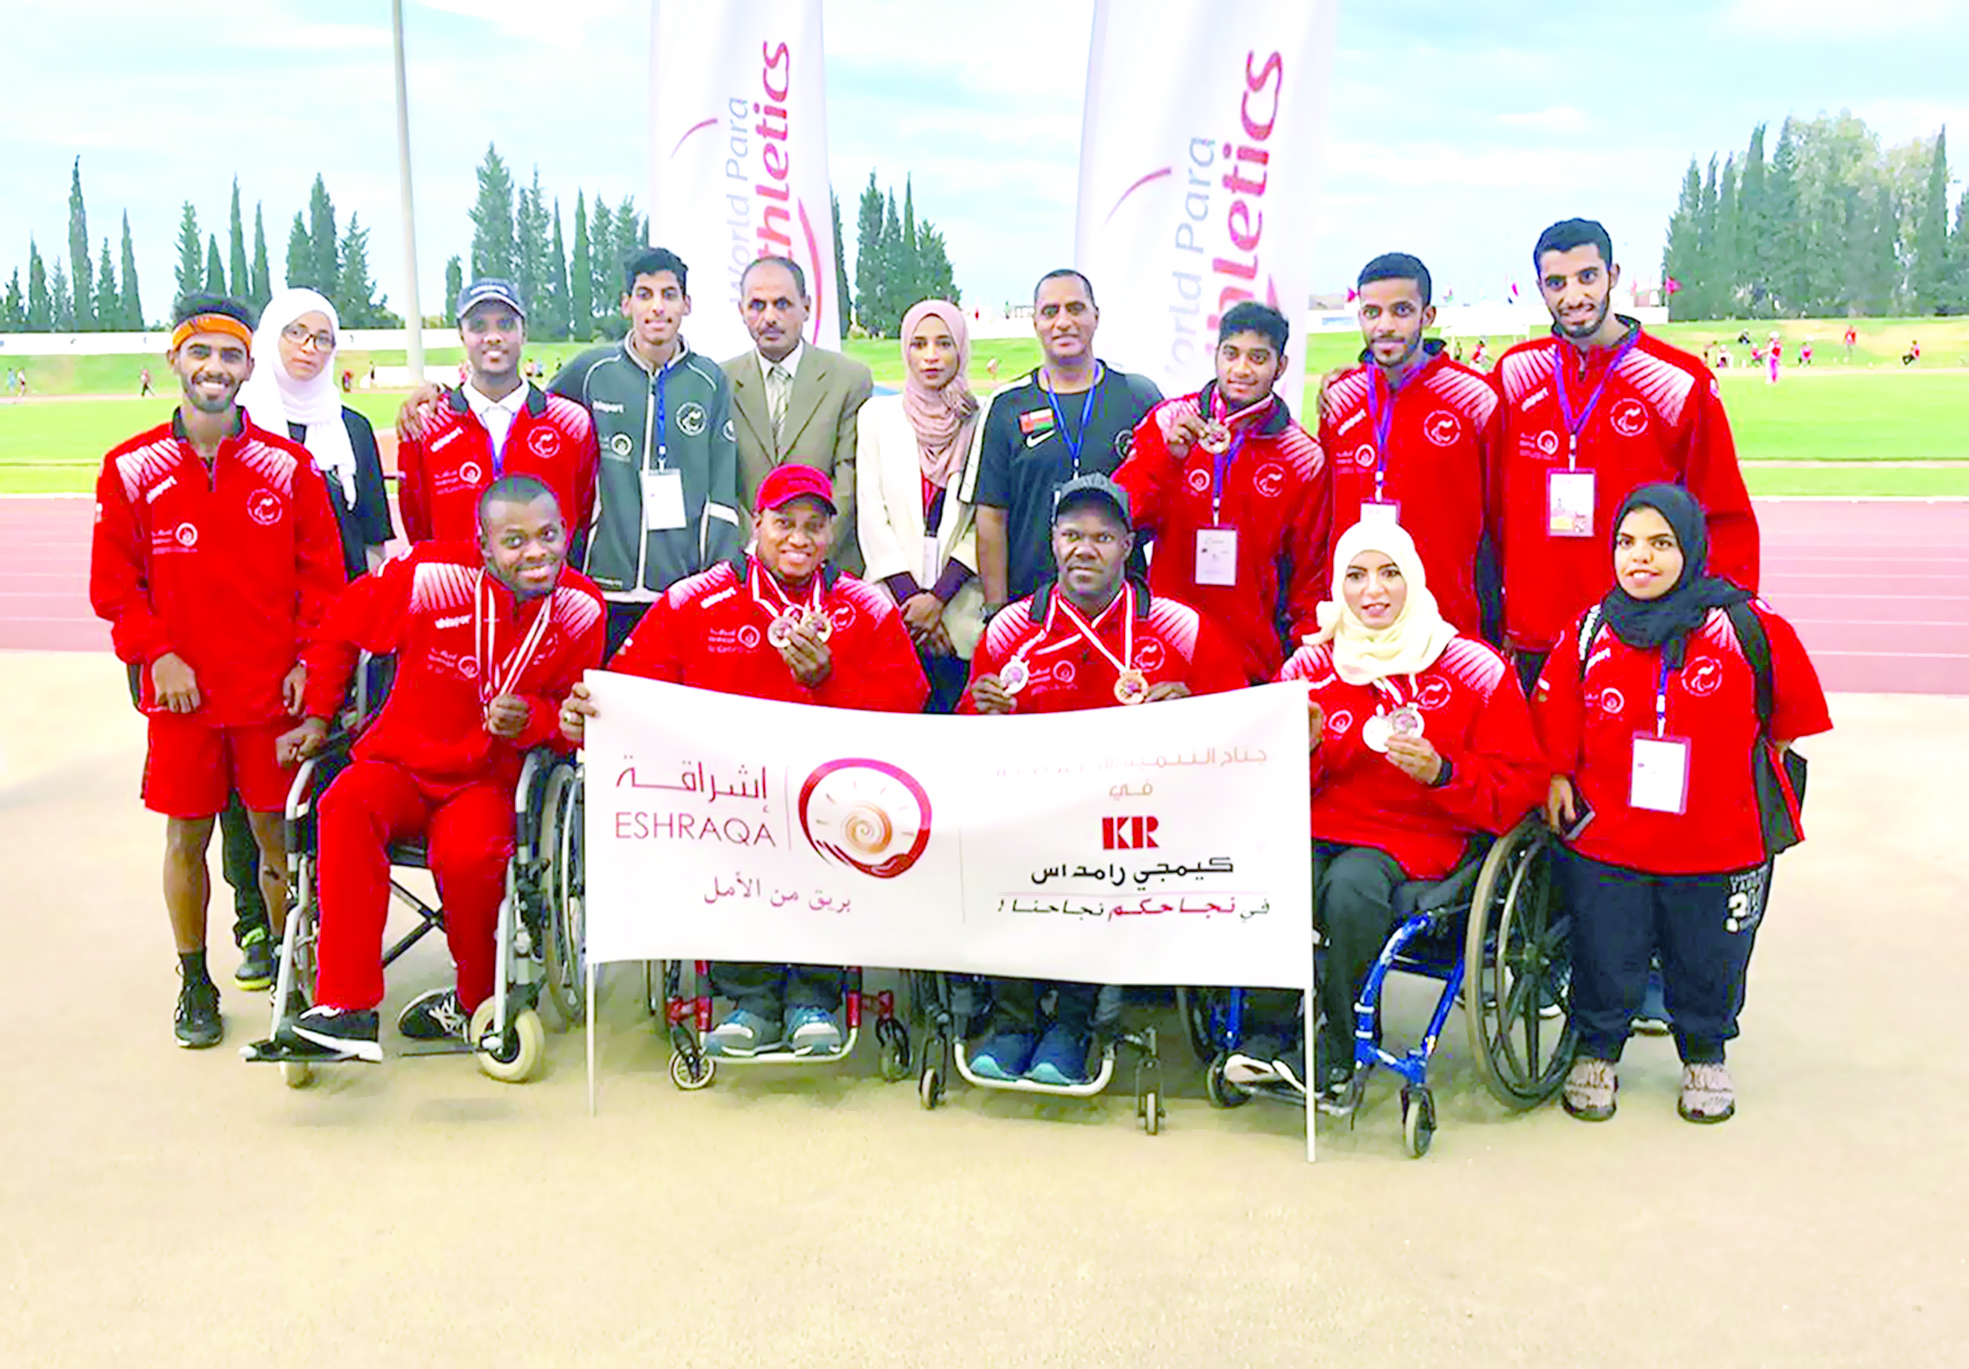 إشراقة تدعم منتخبنا لألعاب القوى لذوي الإعاقة في بطولة المغرب